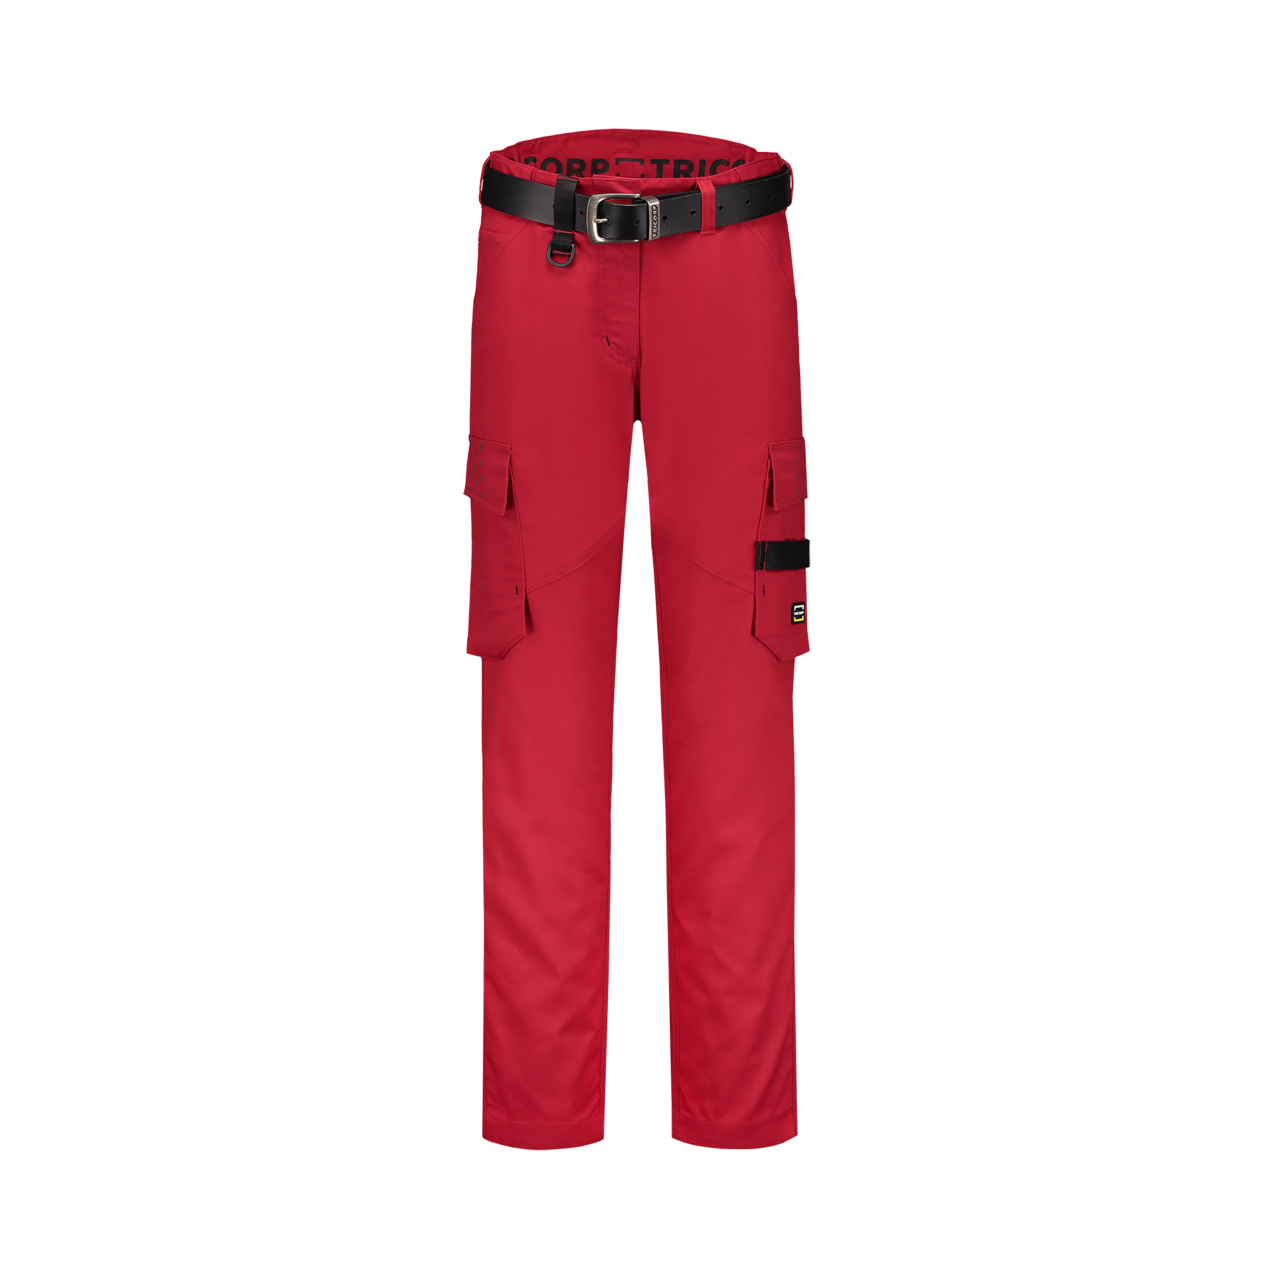 Pracovní kalhoty dámské Tricorp Work Pants Twill Woman - červené, 36